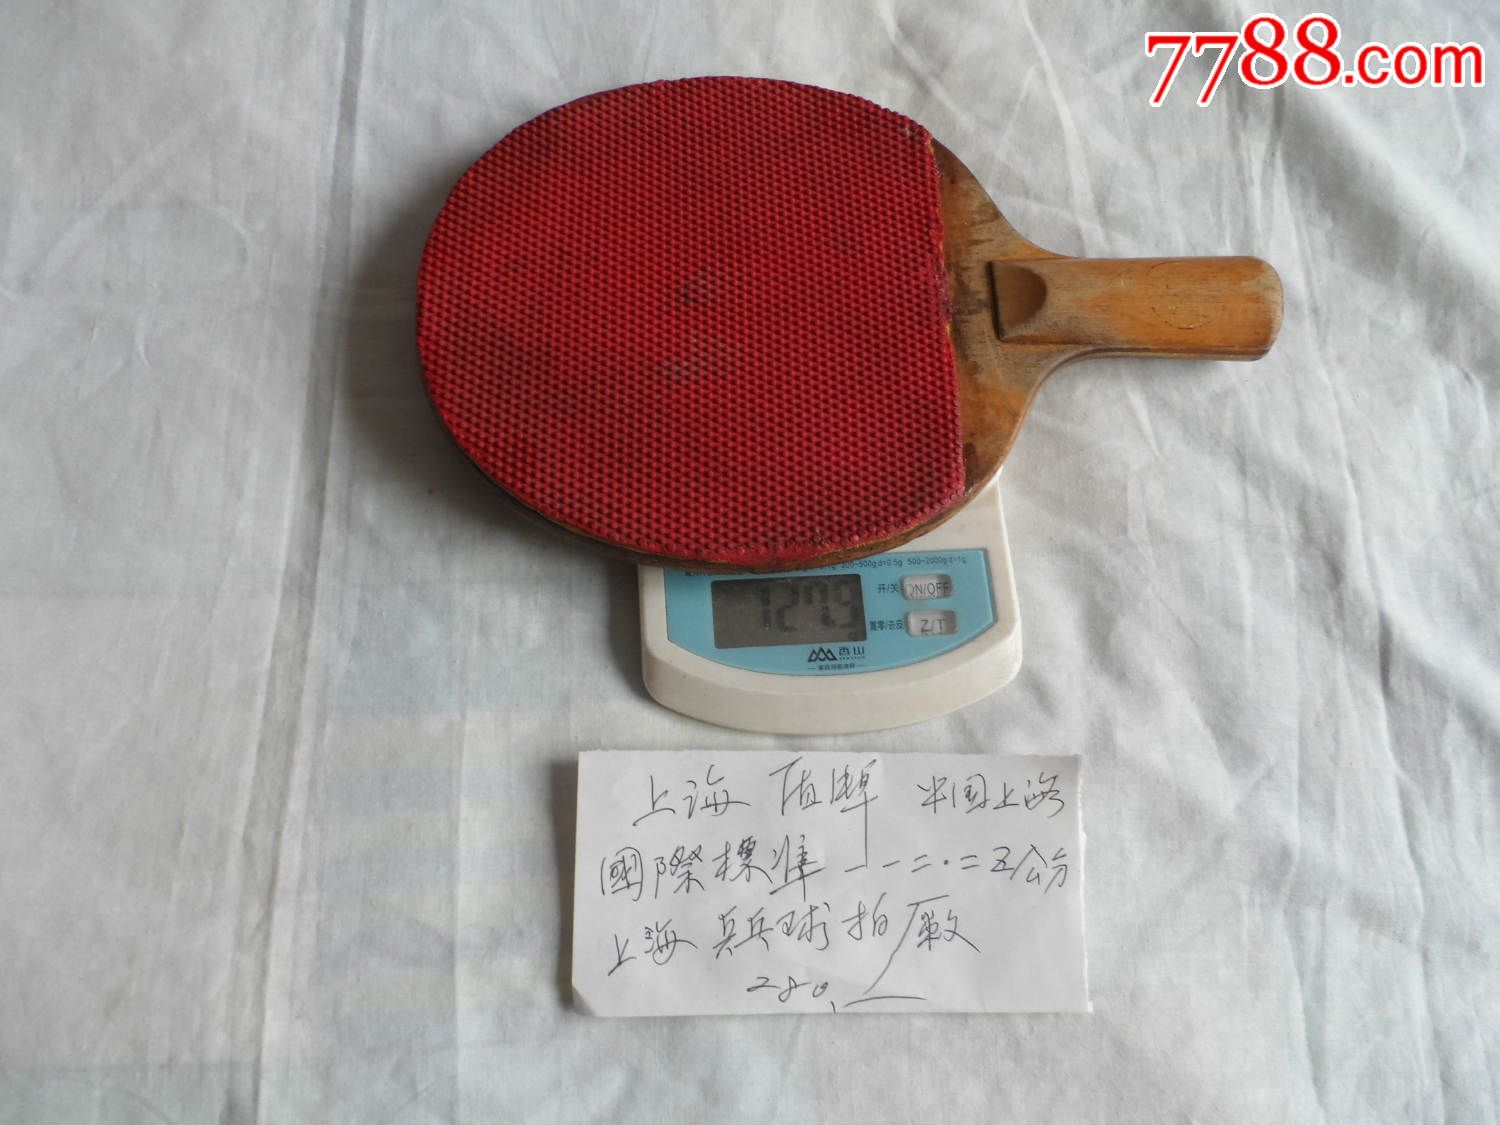 国际标准12.25公分上海乒乓球拍厂【2016—08—15】